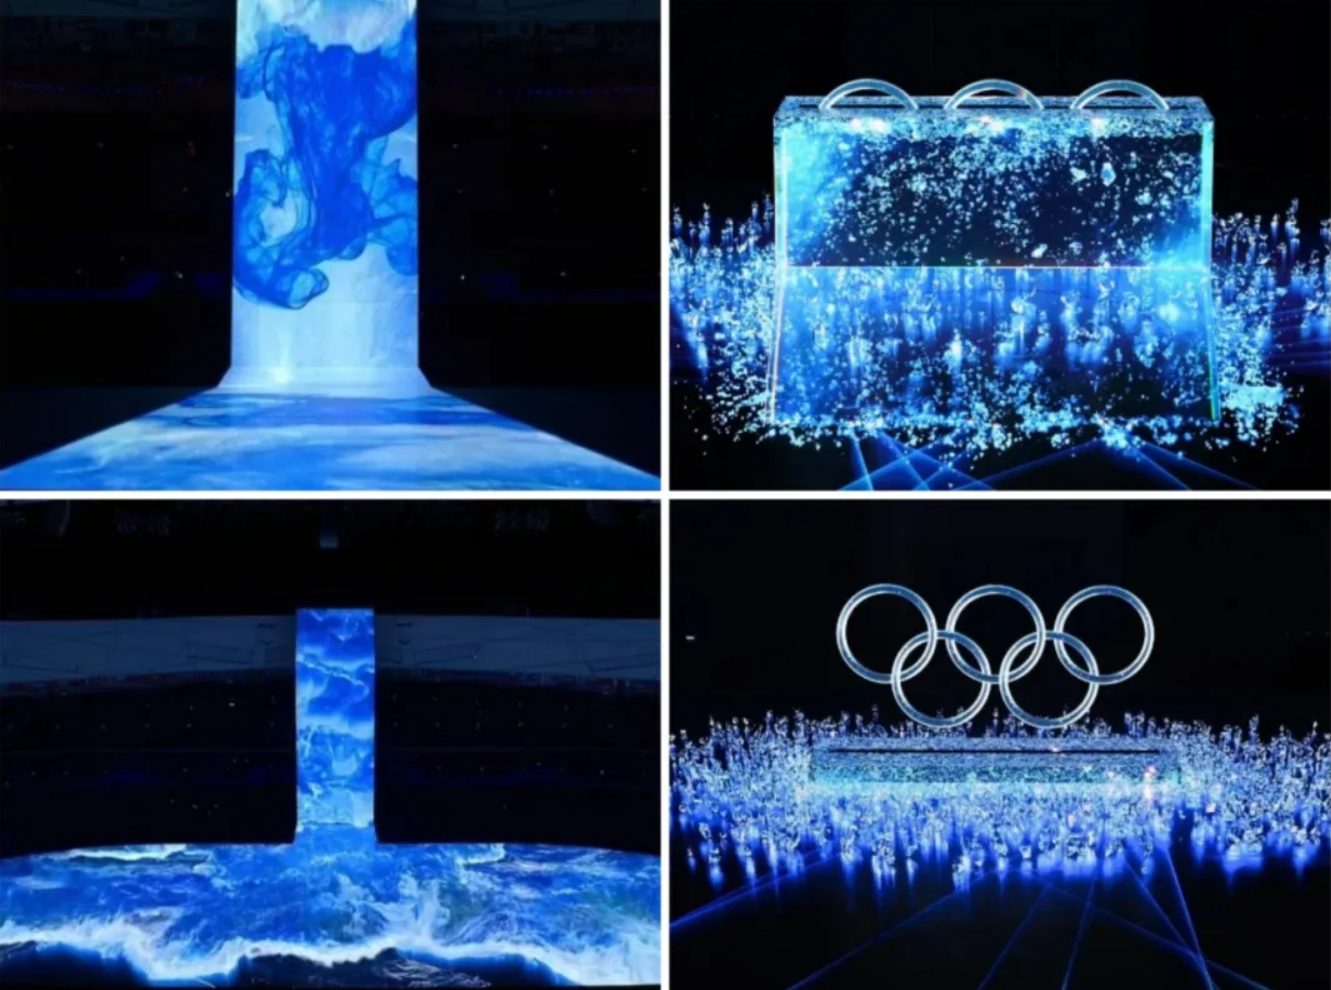 无论是黄河之水天上来的奔涌澎湃,还是奥运五环破冰而出的震撼瞬间